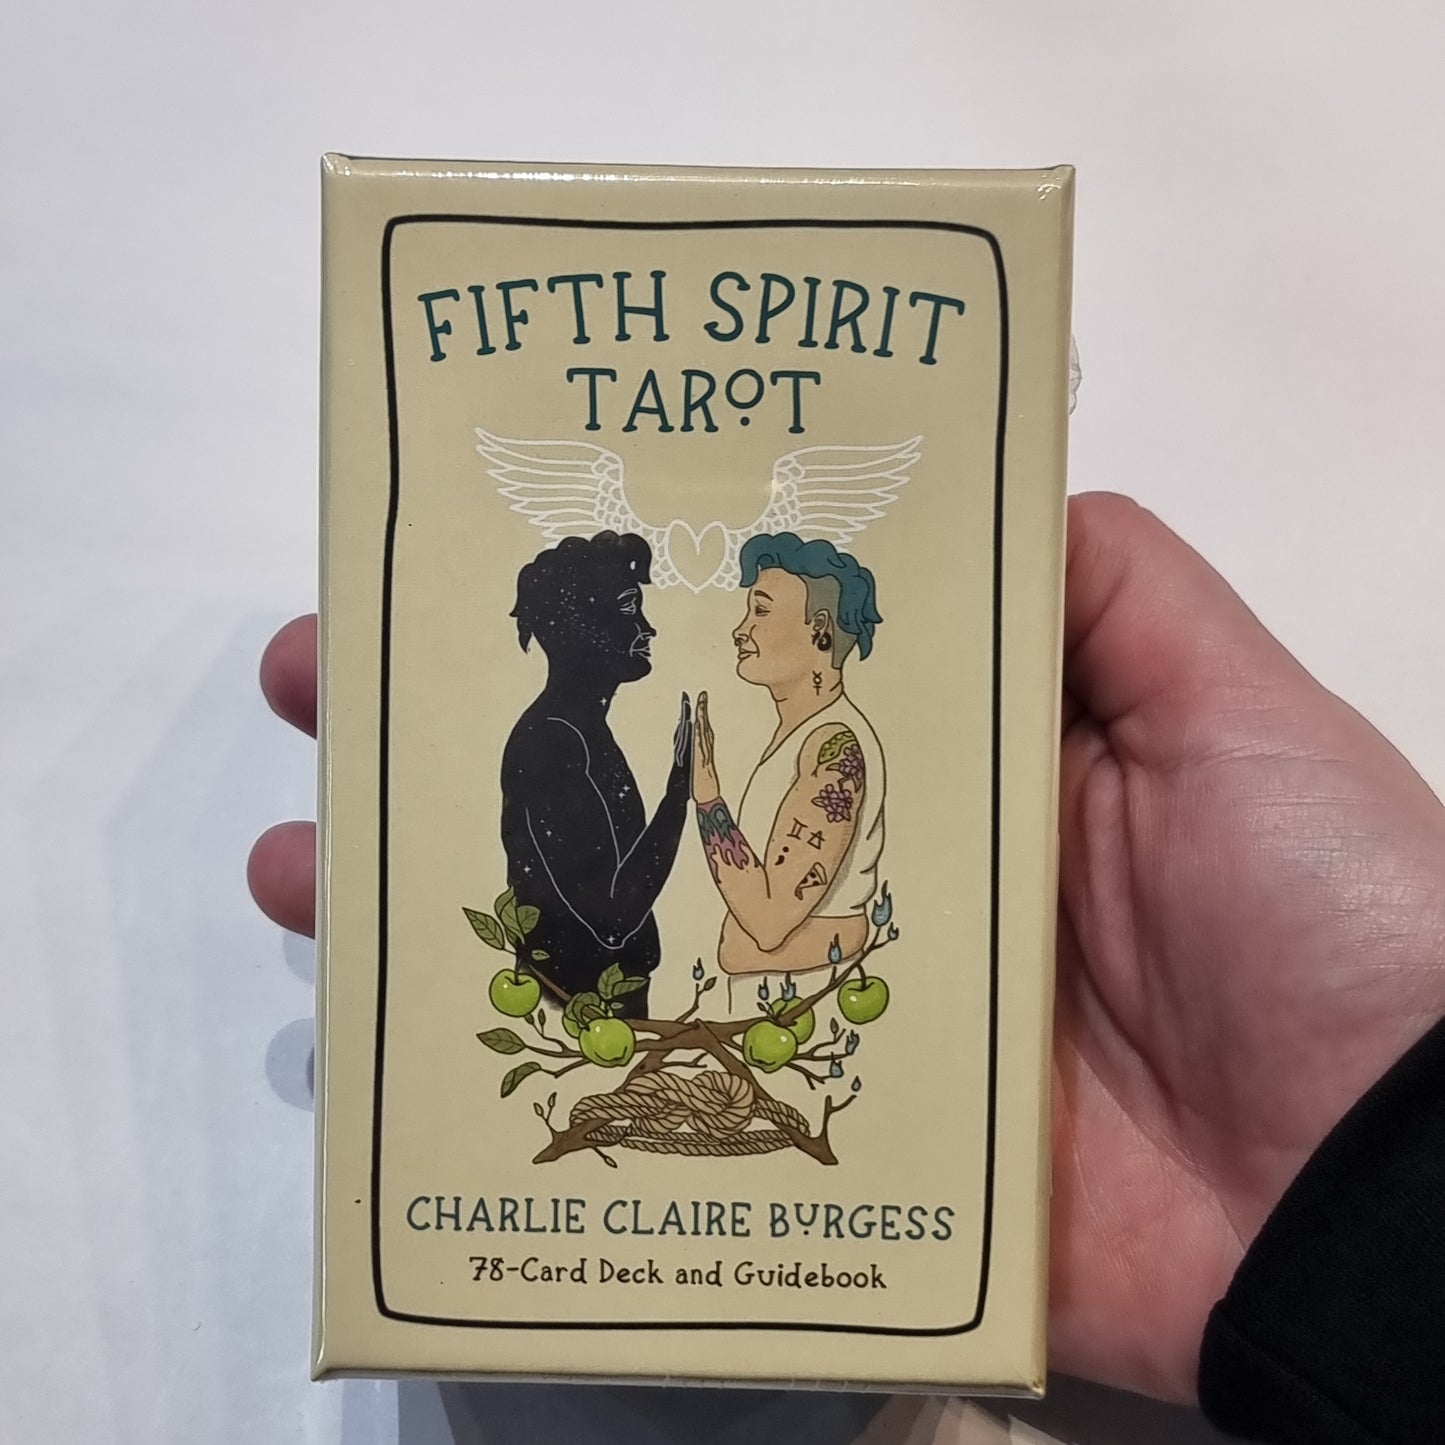 Fifth spirit tarot deck - Rivendell Shop